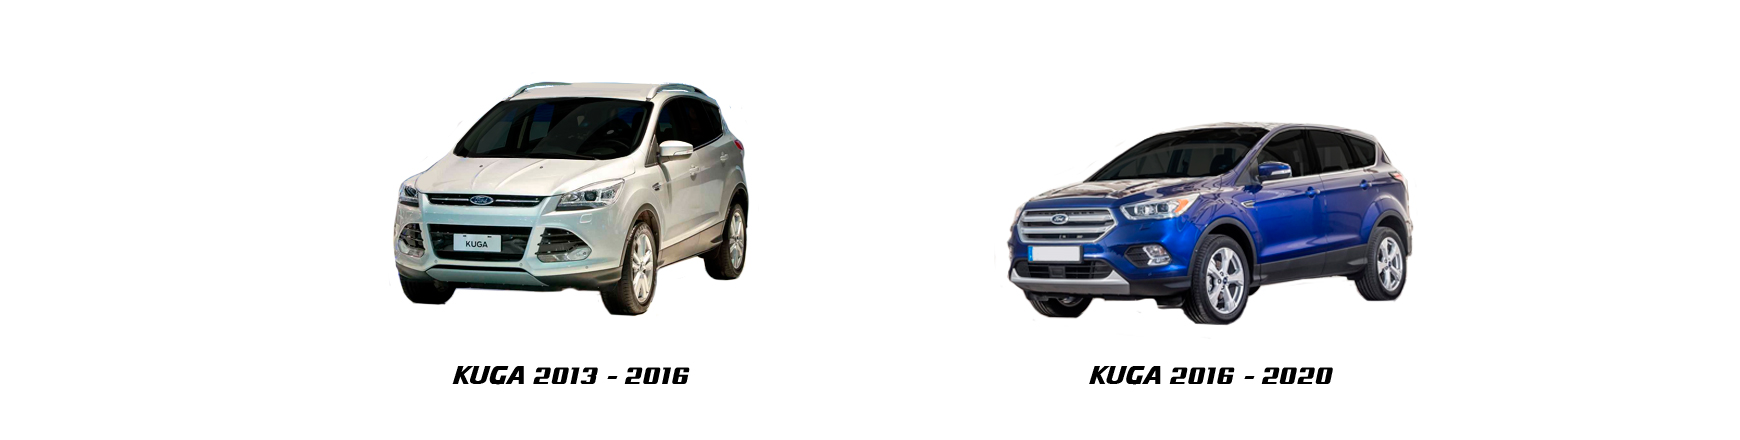 Ford Kuga años 2013 2014 2015 2016